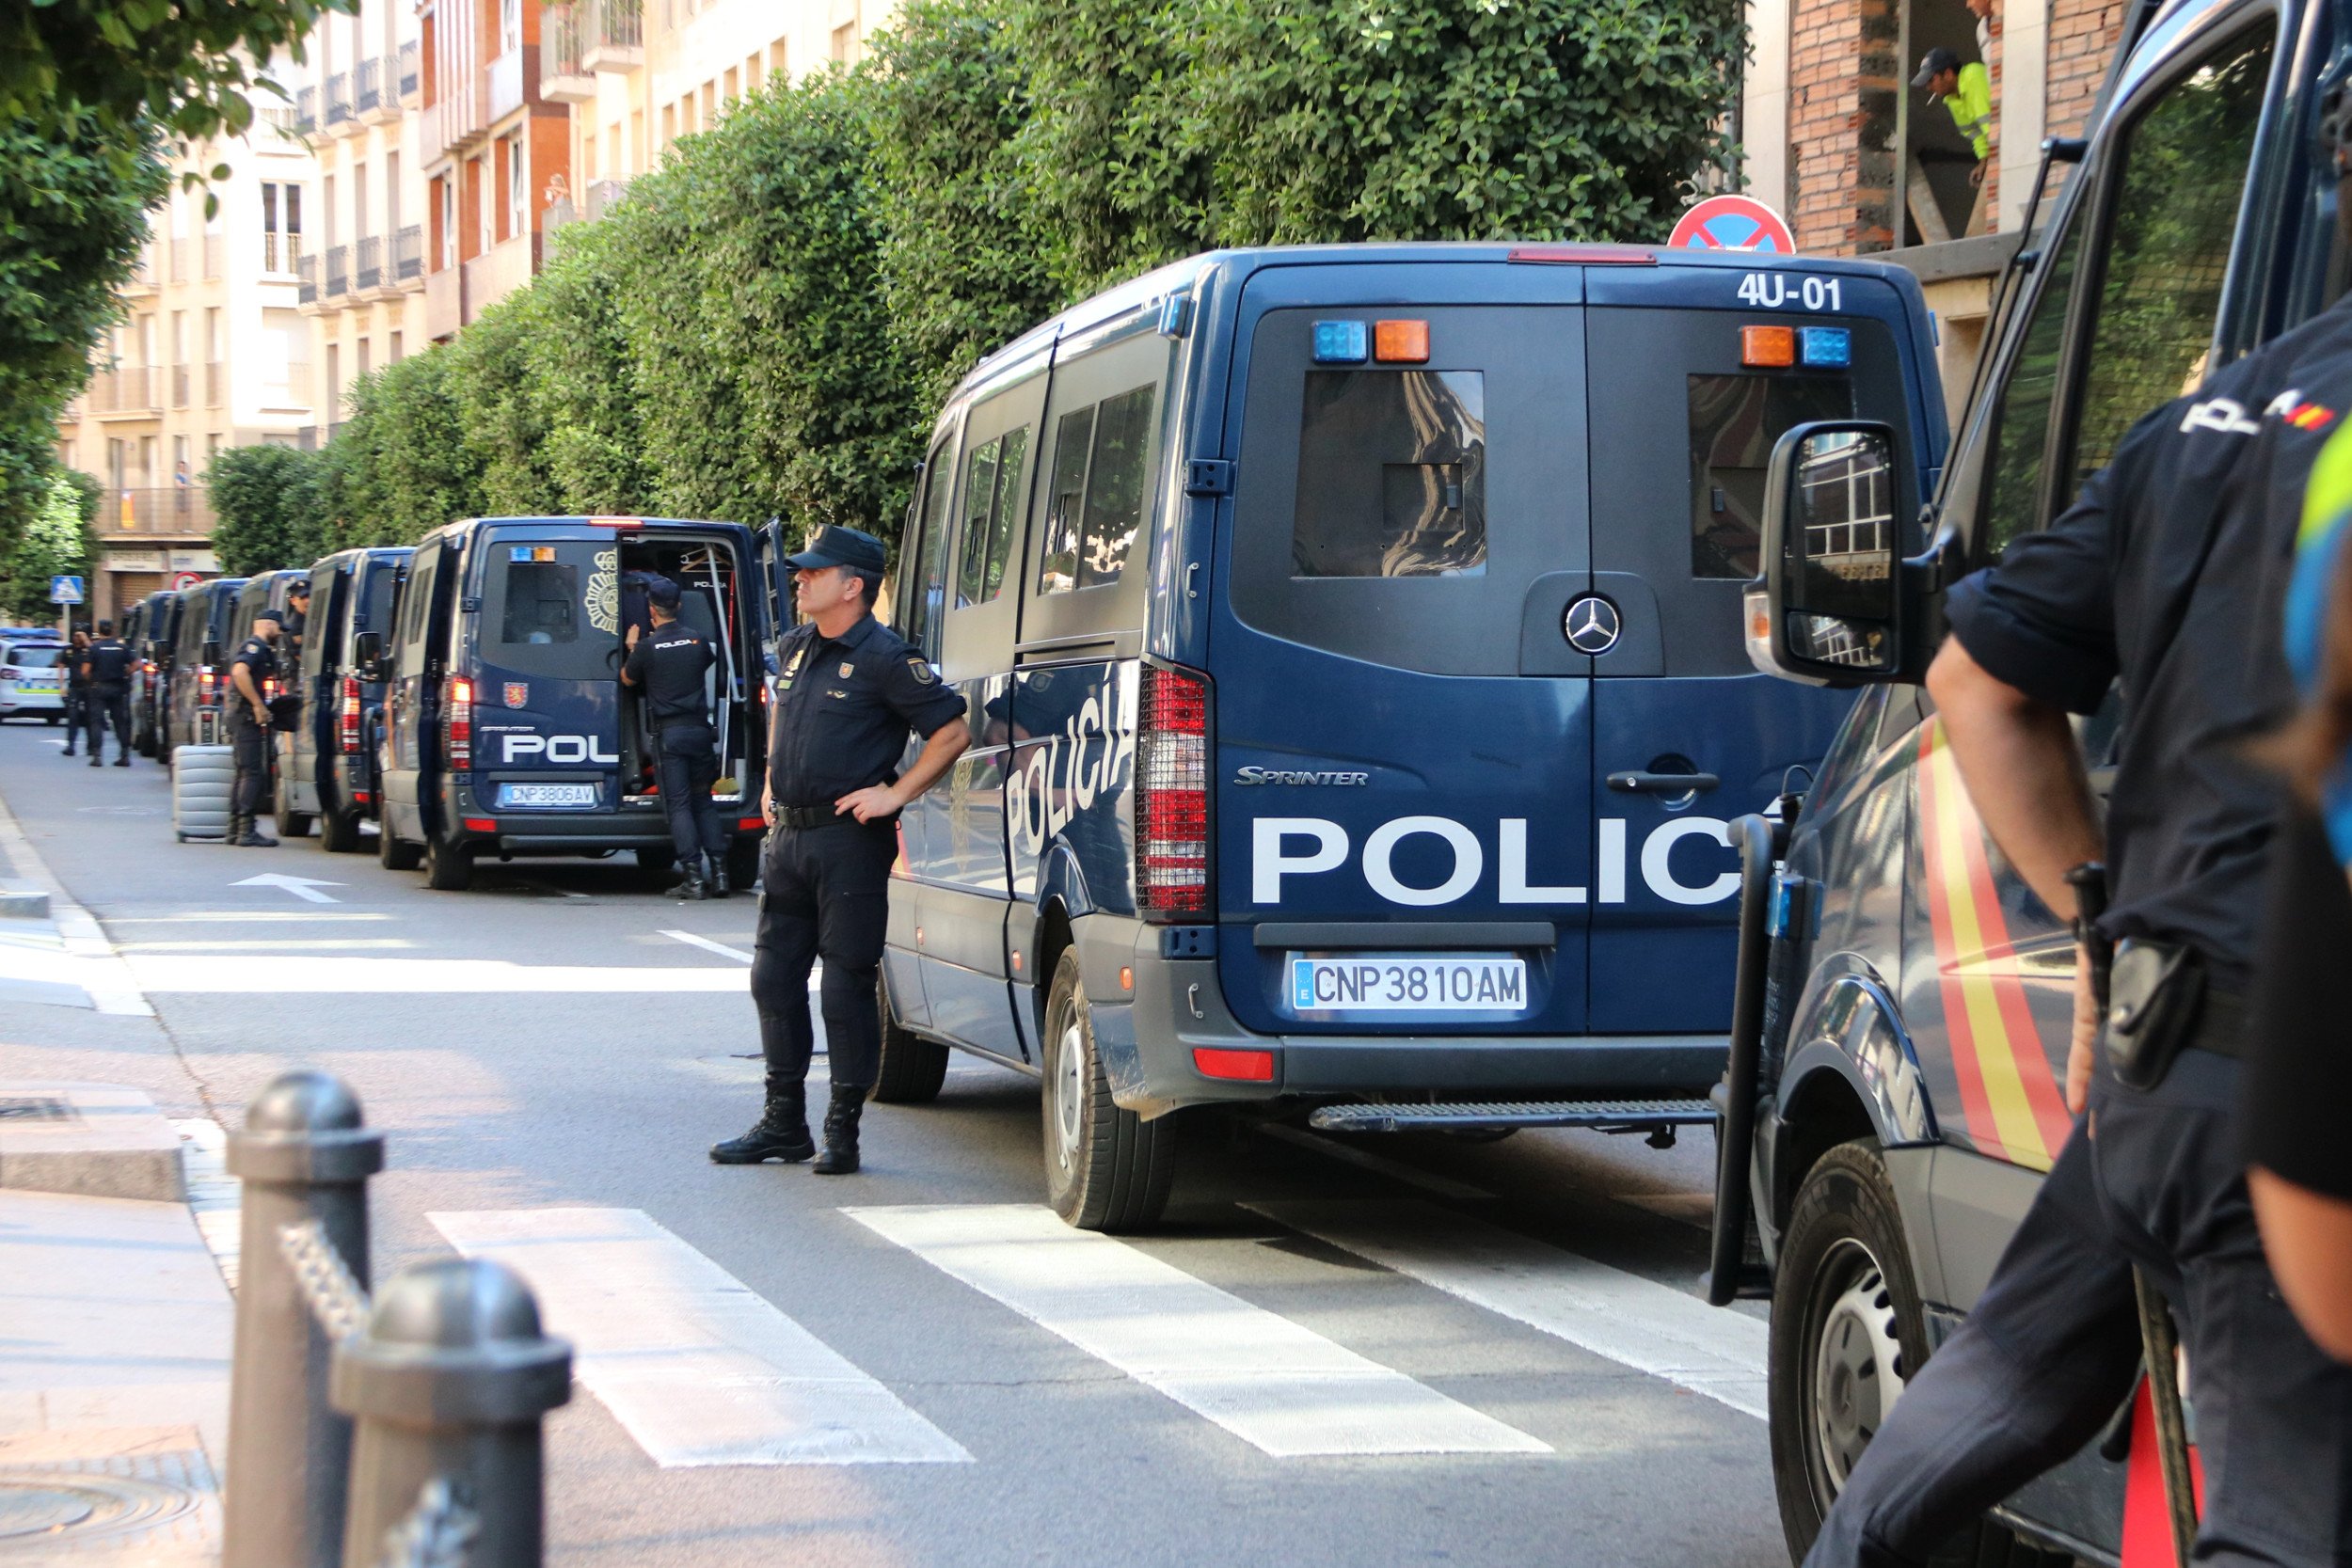 Despliegue de furgones de la policía española en Salou